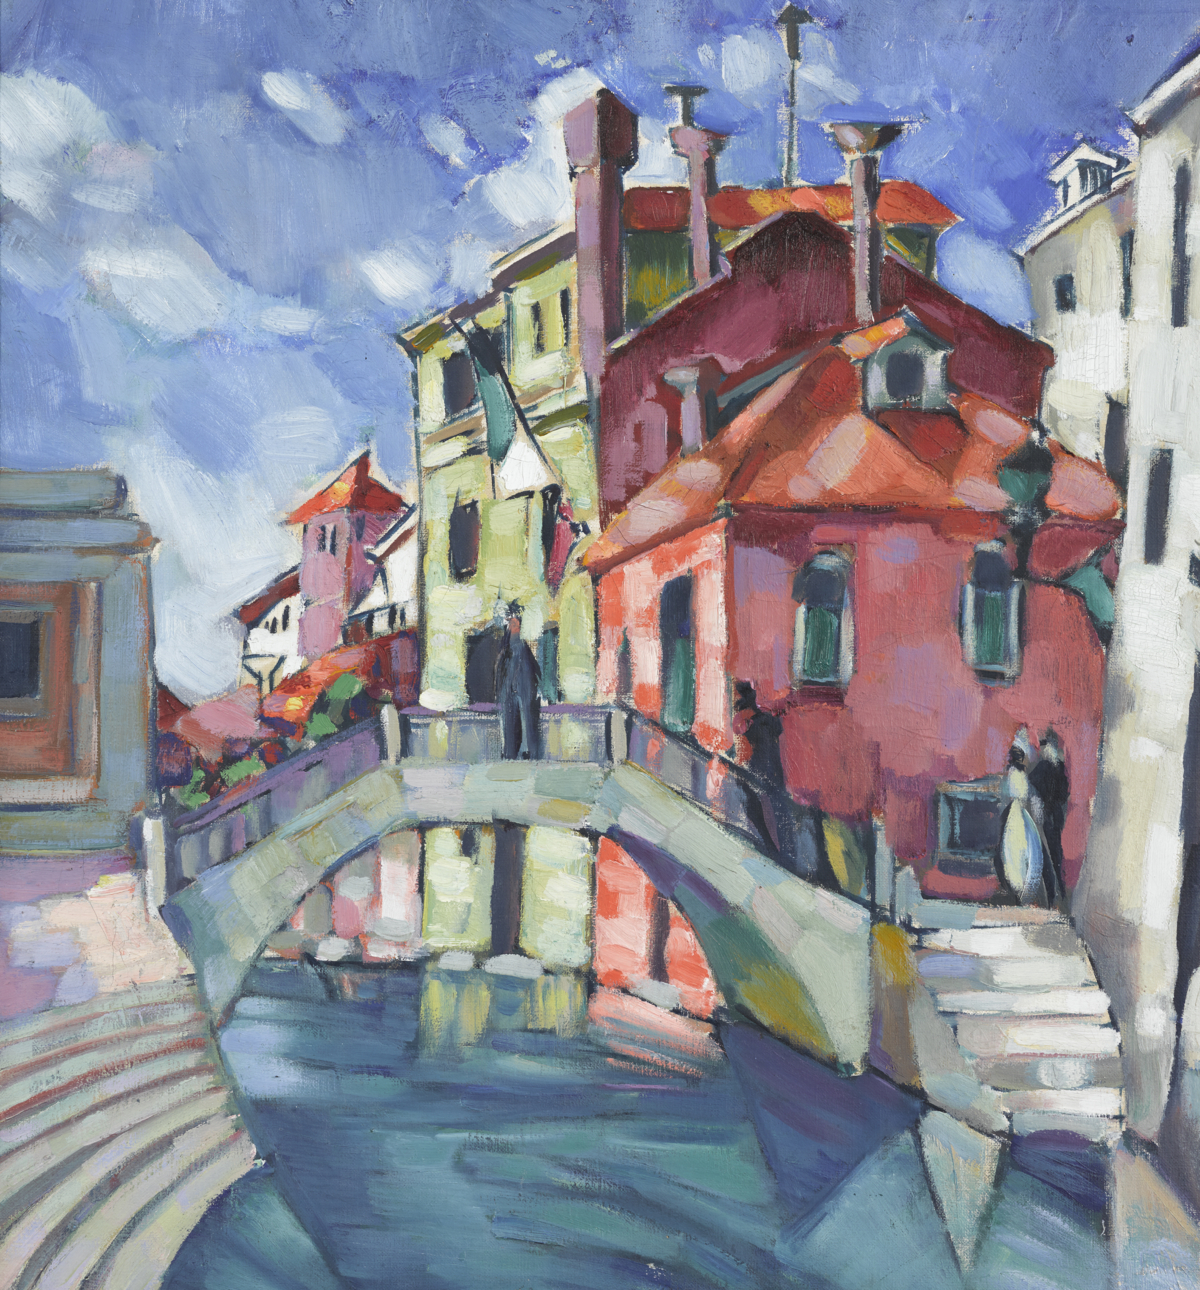 Konrad M&auml;gi, Venice (Canal in Venice), 1922&ndash;1923, Art Museum of Estonia.

